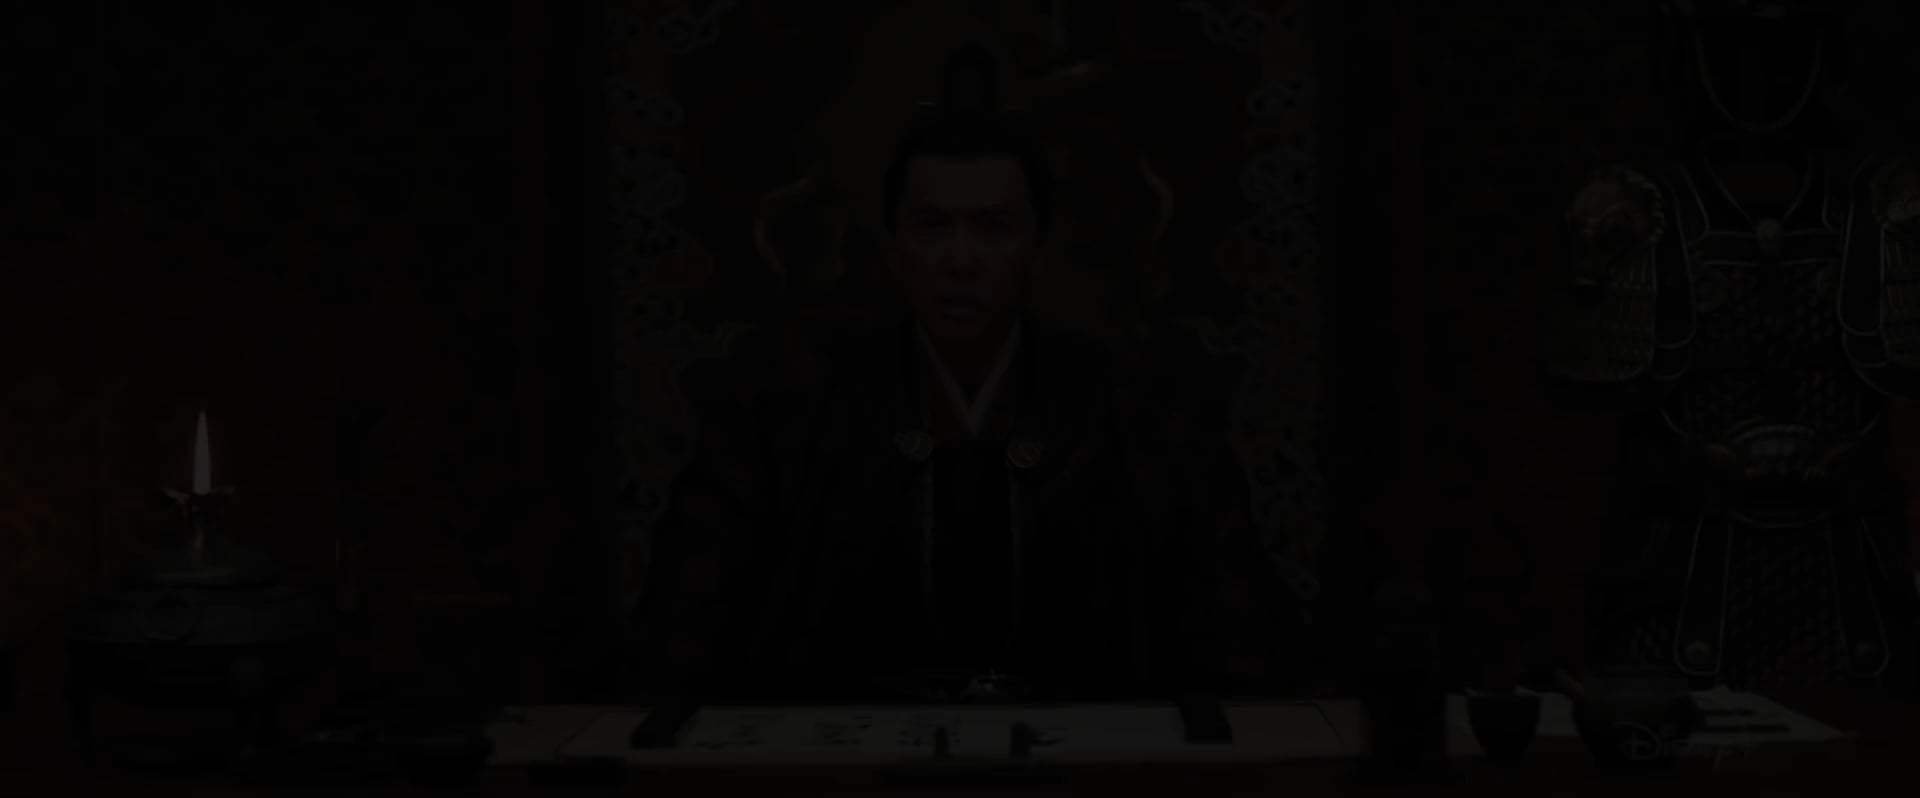 Mulan TV Spot - Spirit (2020) Screen Capture #1